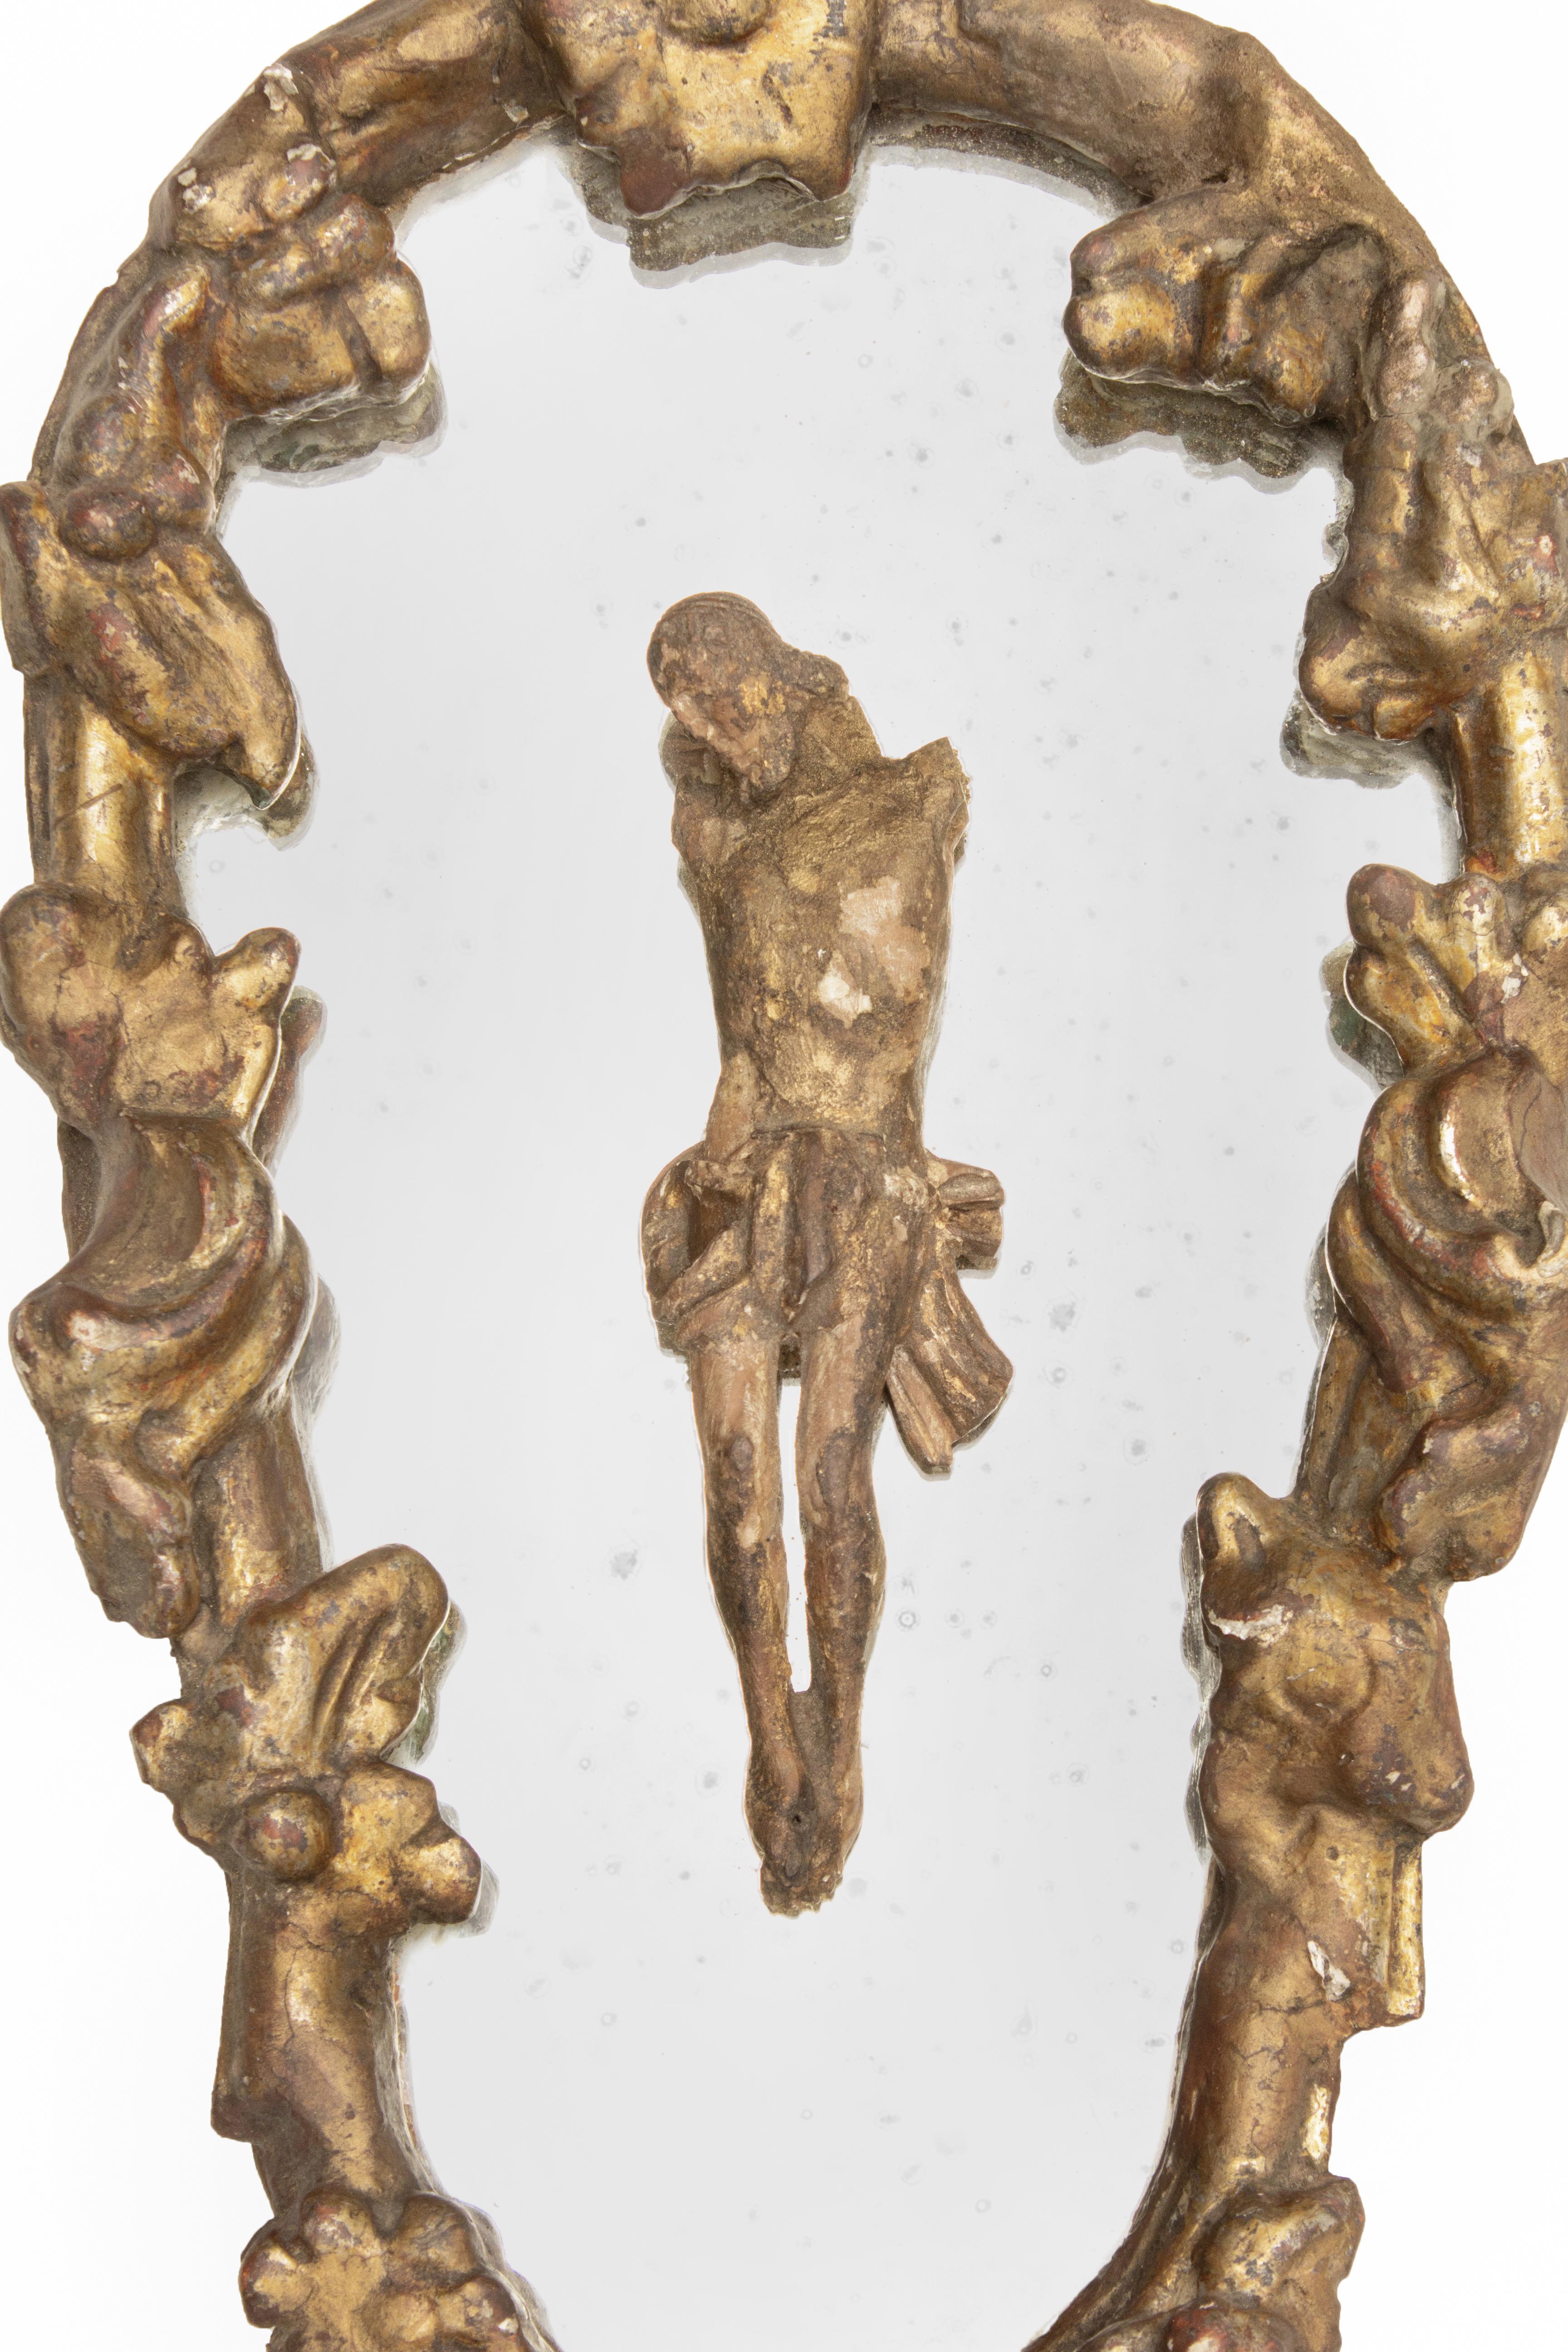 Italienischer handgeschnitzter Blattgoldspiegel aus dem 18. Jahrhundert mit geschnitzter Christusfigur aus dem 18. 

Der Spiegel aus Blattgold stammt ursprünglich aus Ligurien. Die italienische Christusfigur aus dem 18. Jahrhundert wird auf dem